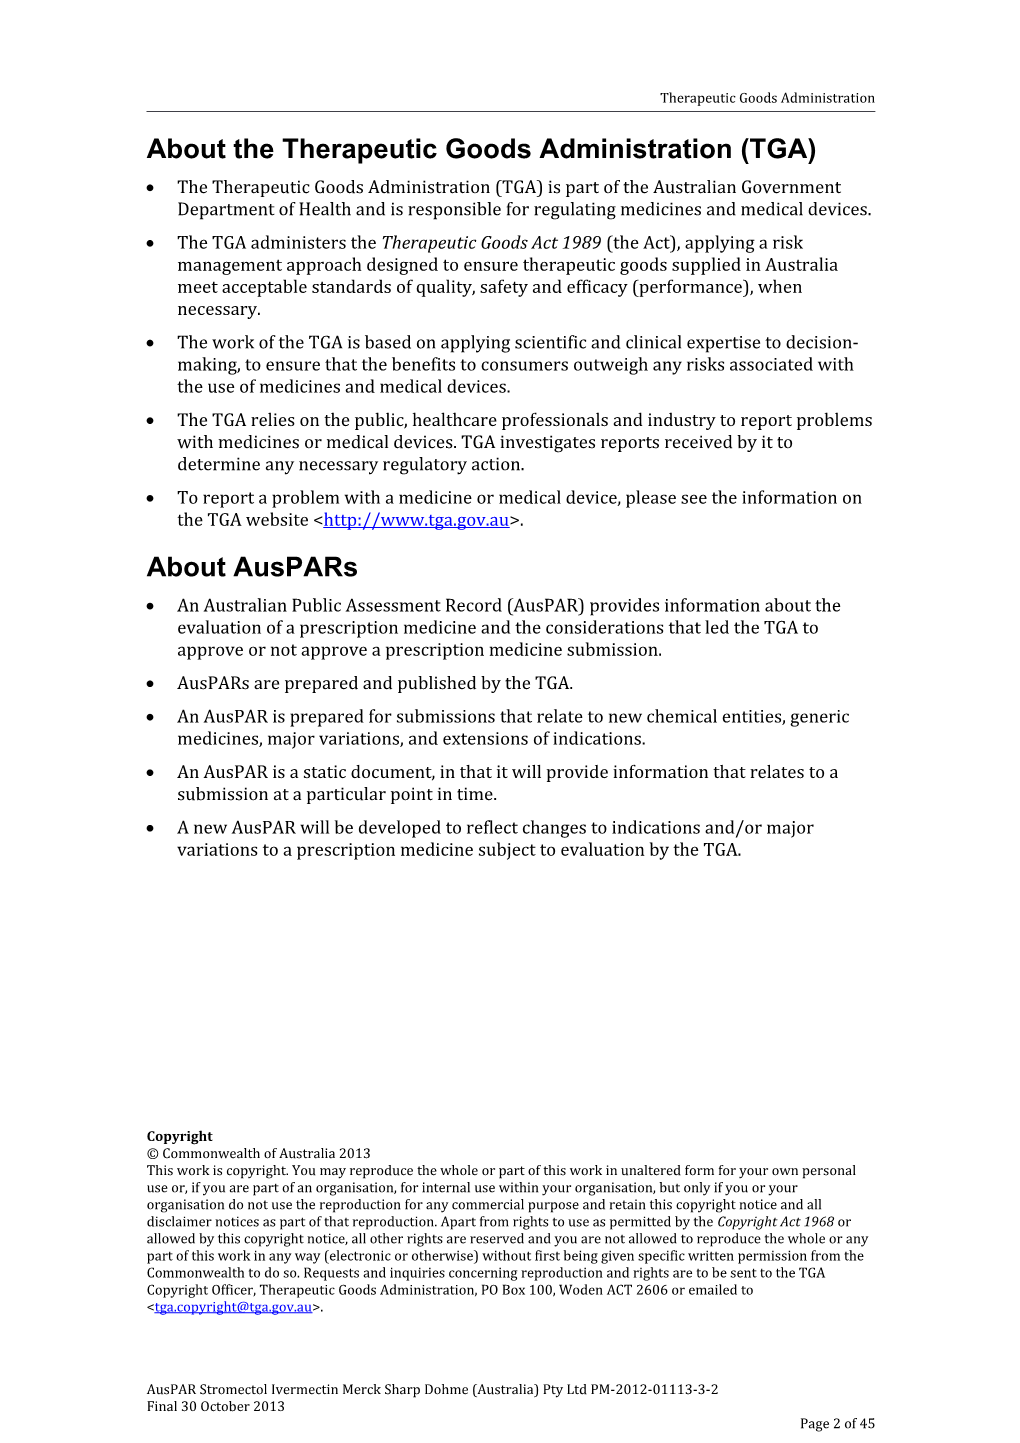 Australian Public Assessment for Ivermectin